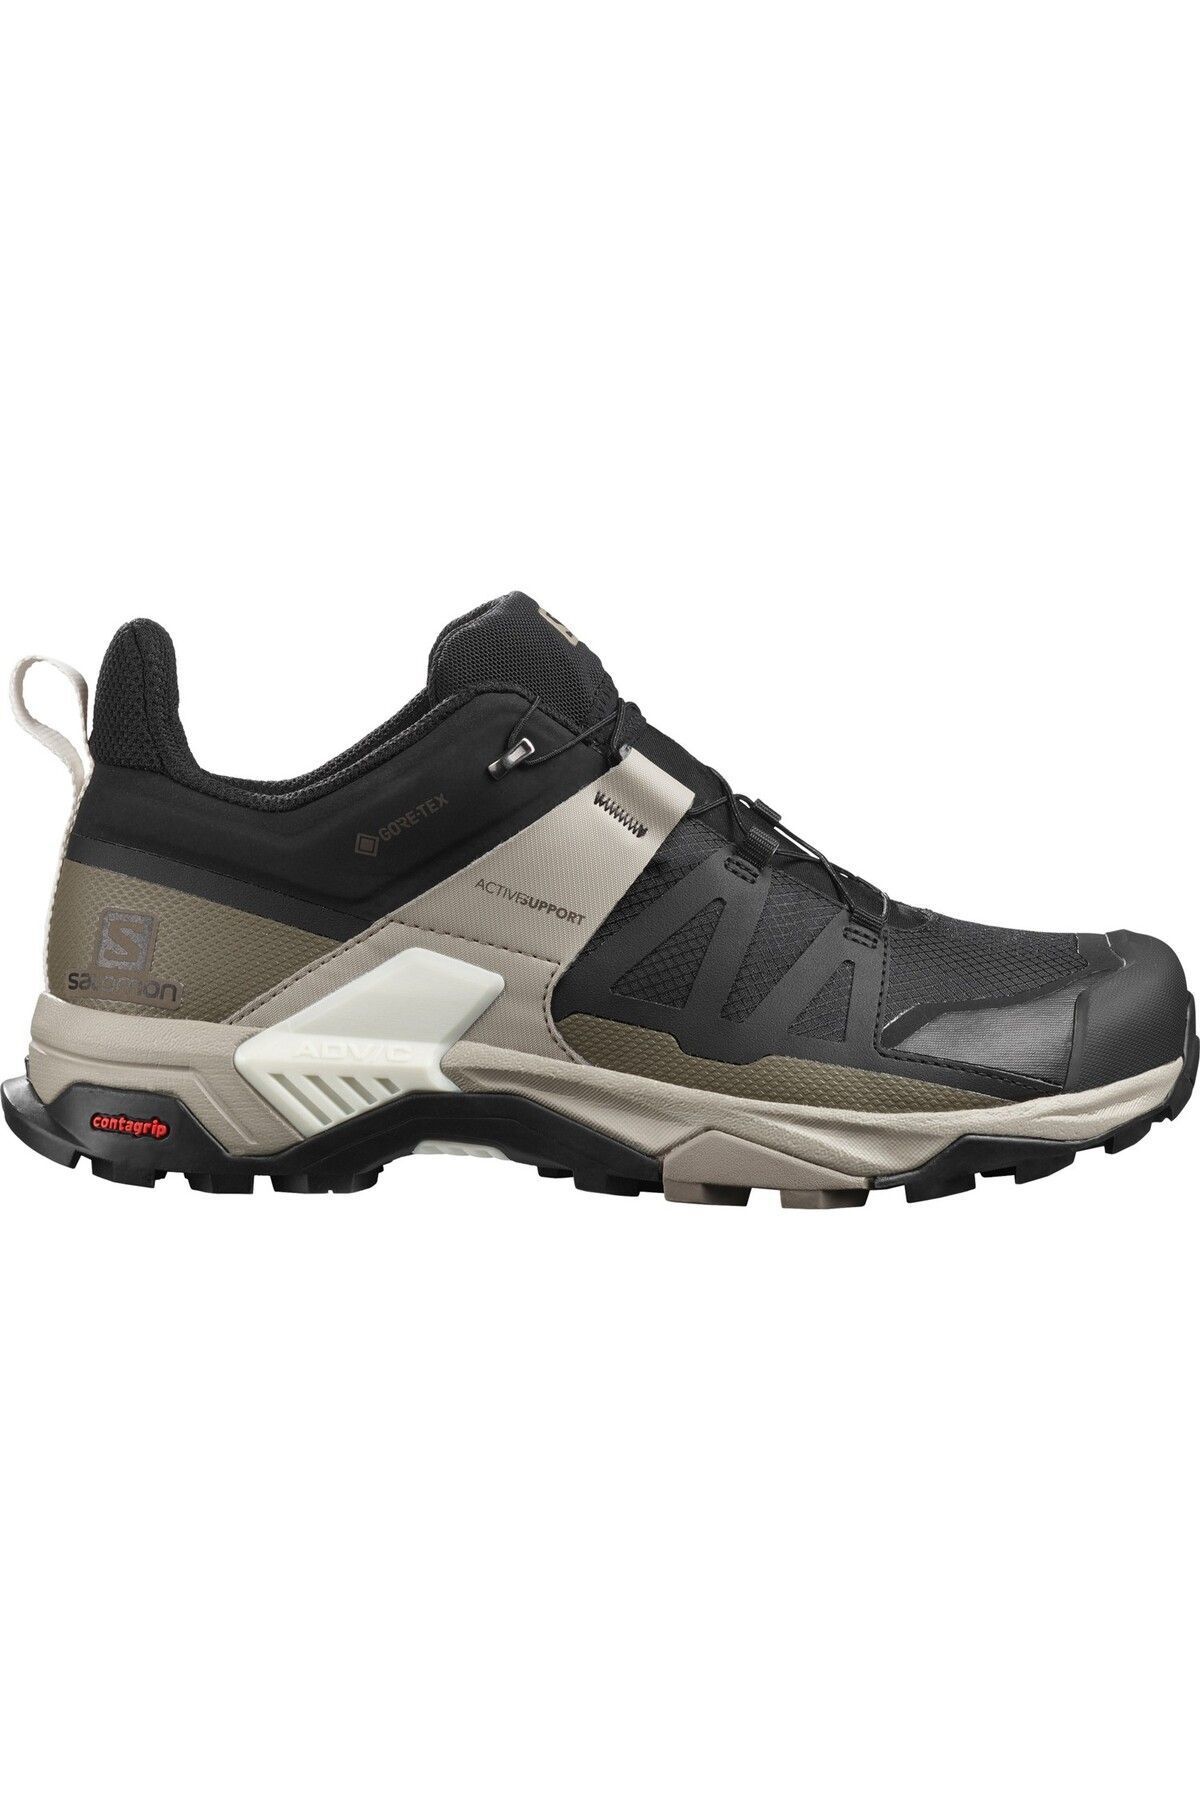 Salomon X Ultra 4 Gore-tex® Erkek Outdoor Ayakkabı L41288100